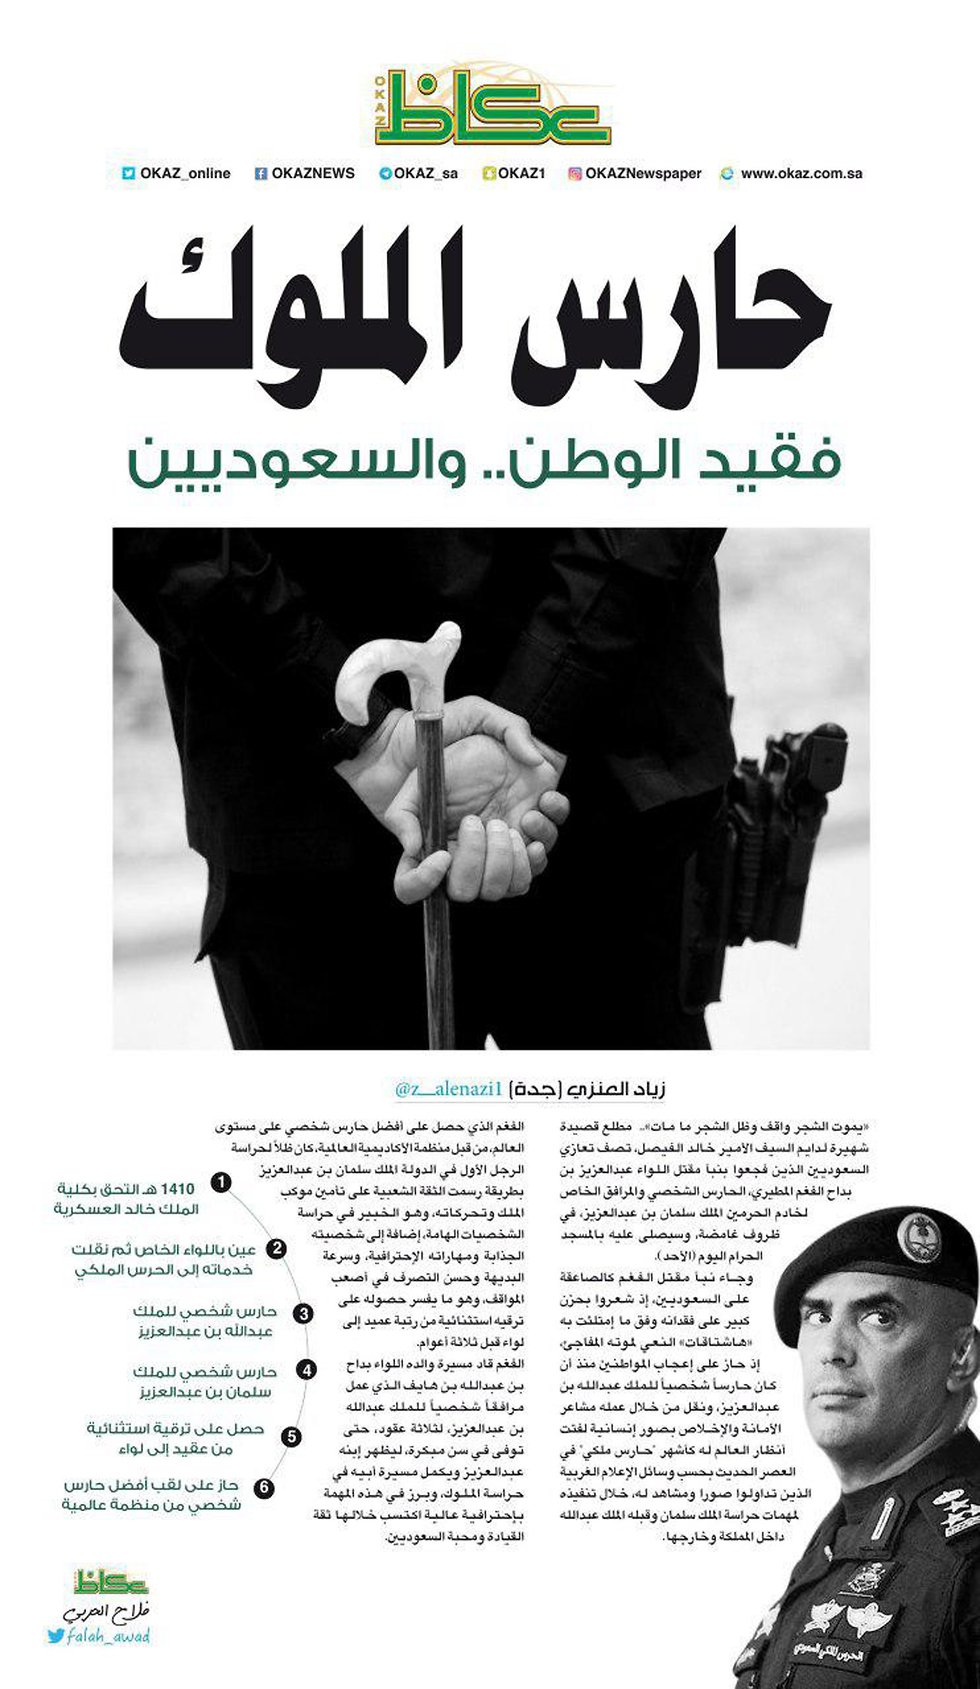 שומר אישי של מלך סעודיה נורה למוות עבד אל-עזיז אל-פרם ג'דה שער עיתון אל עוקאז ()